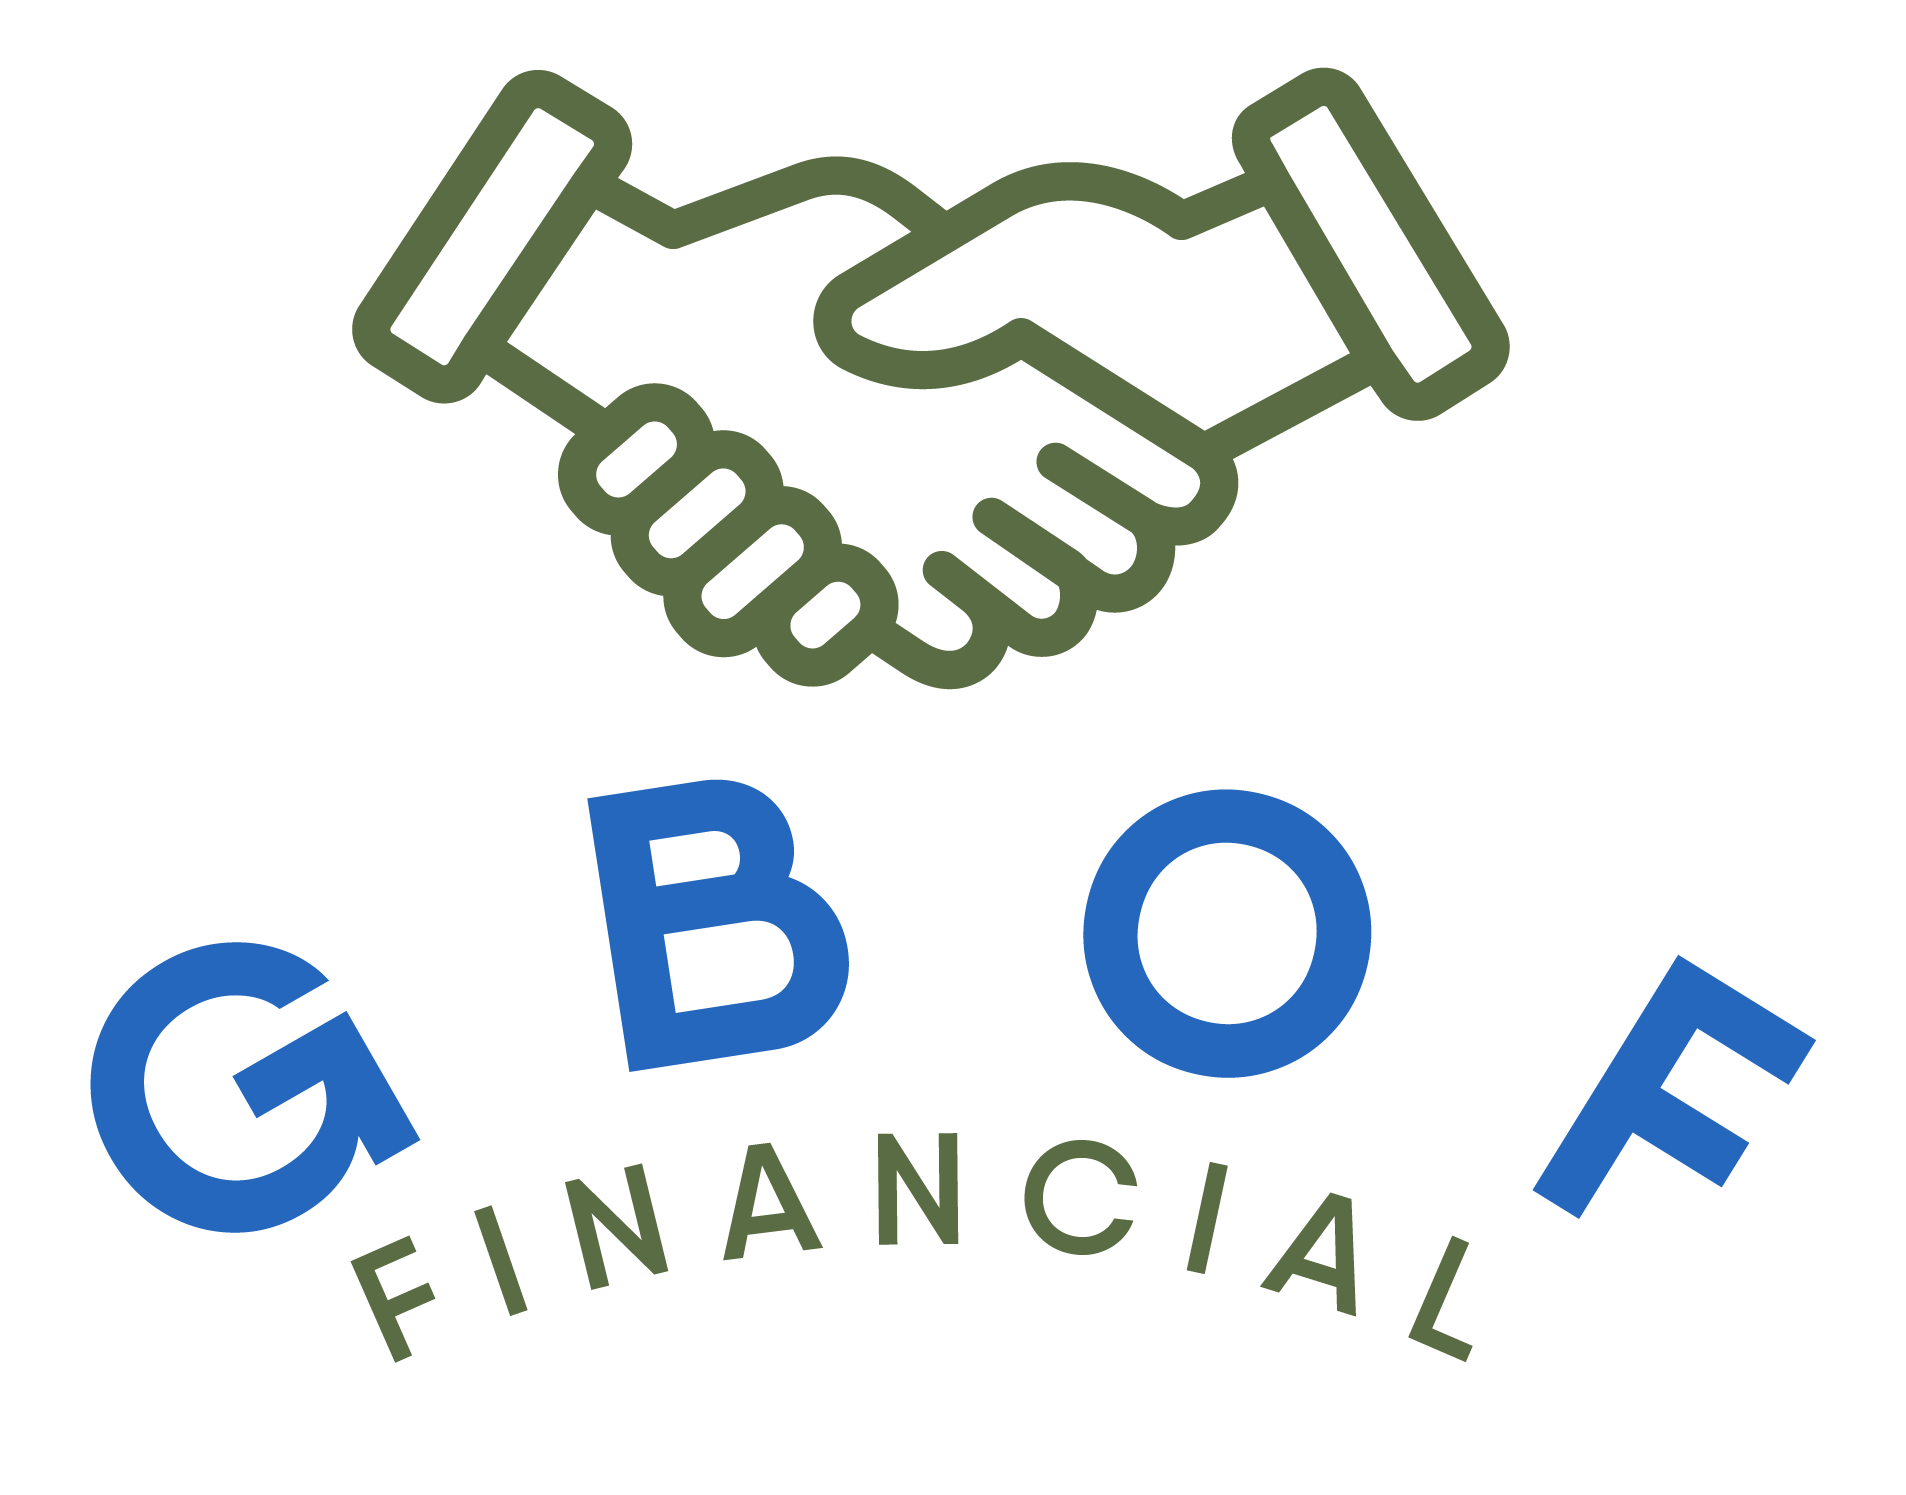 GBOF Financial